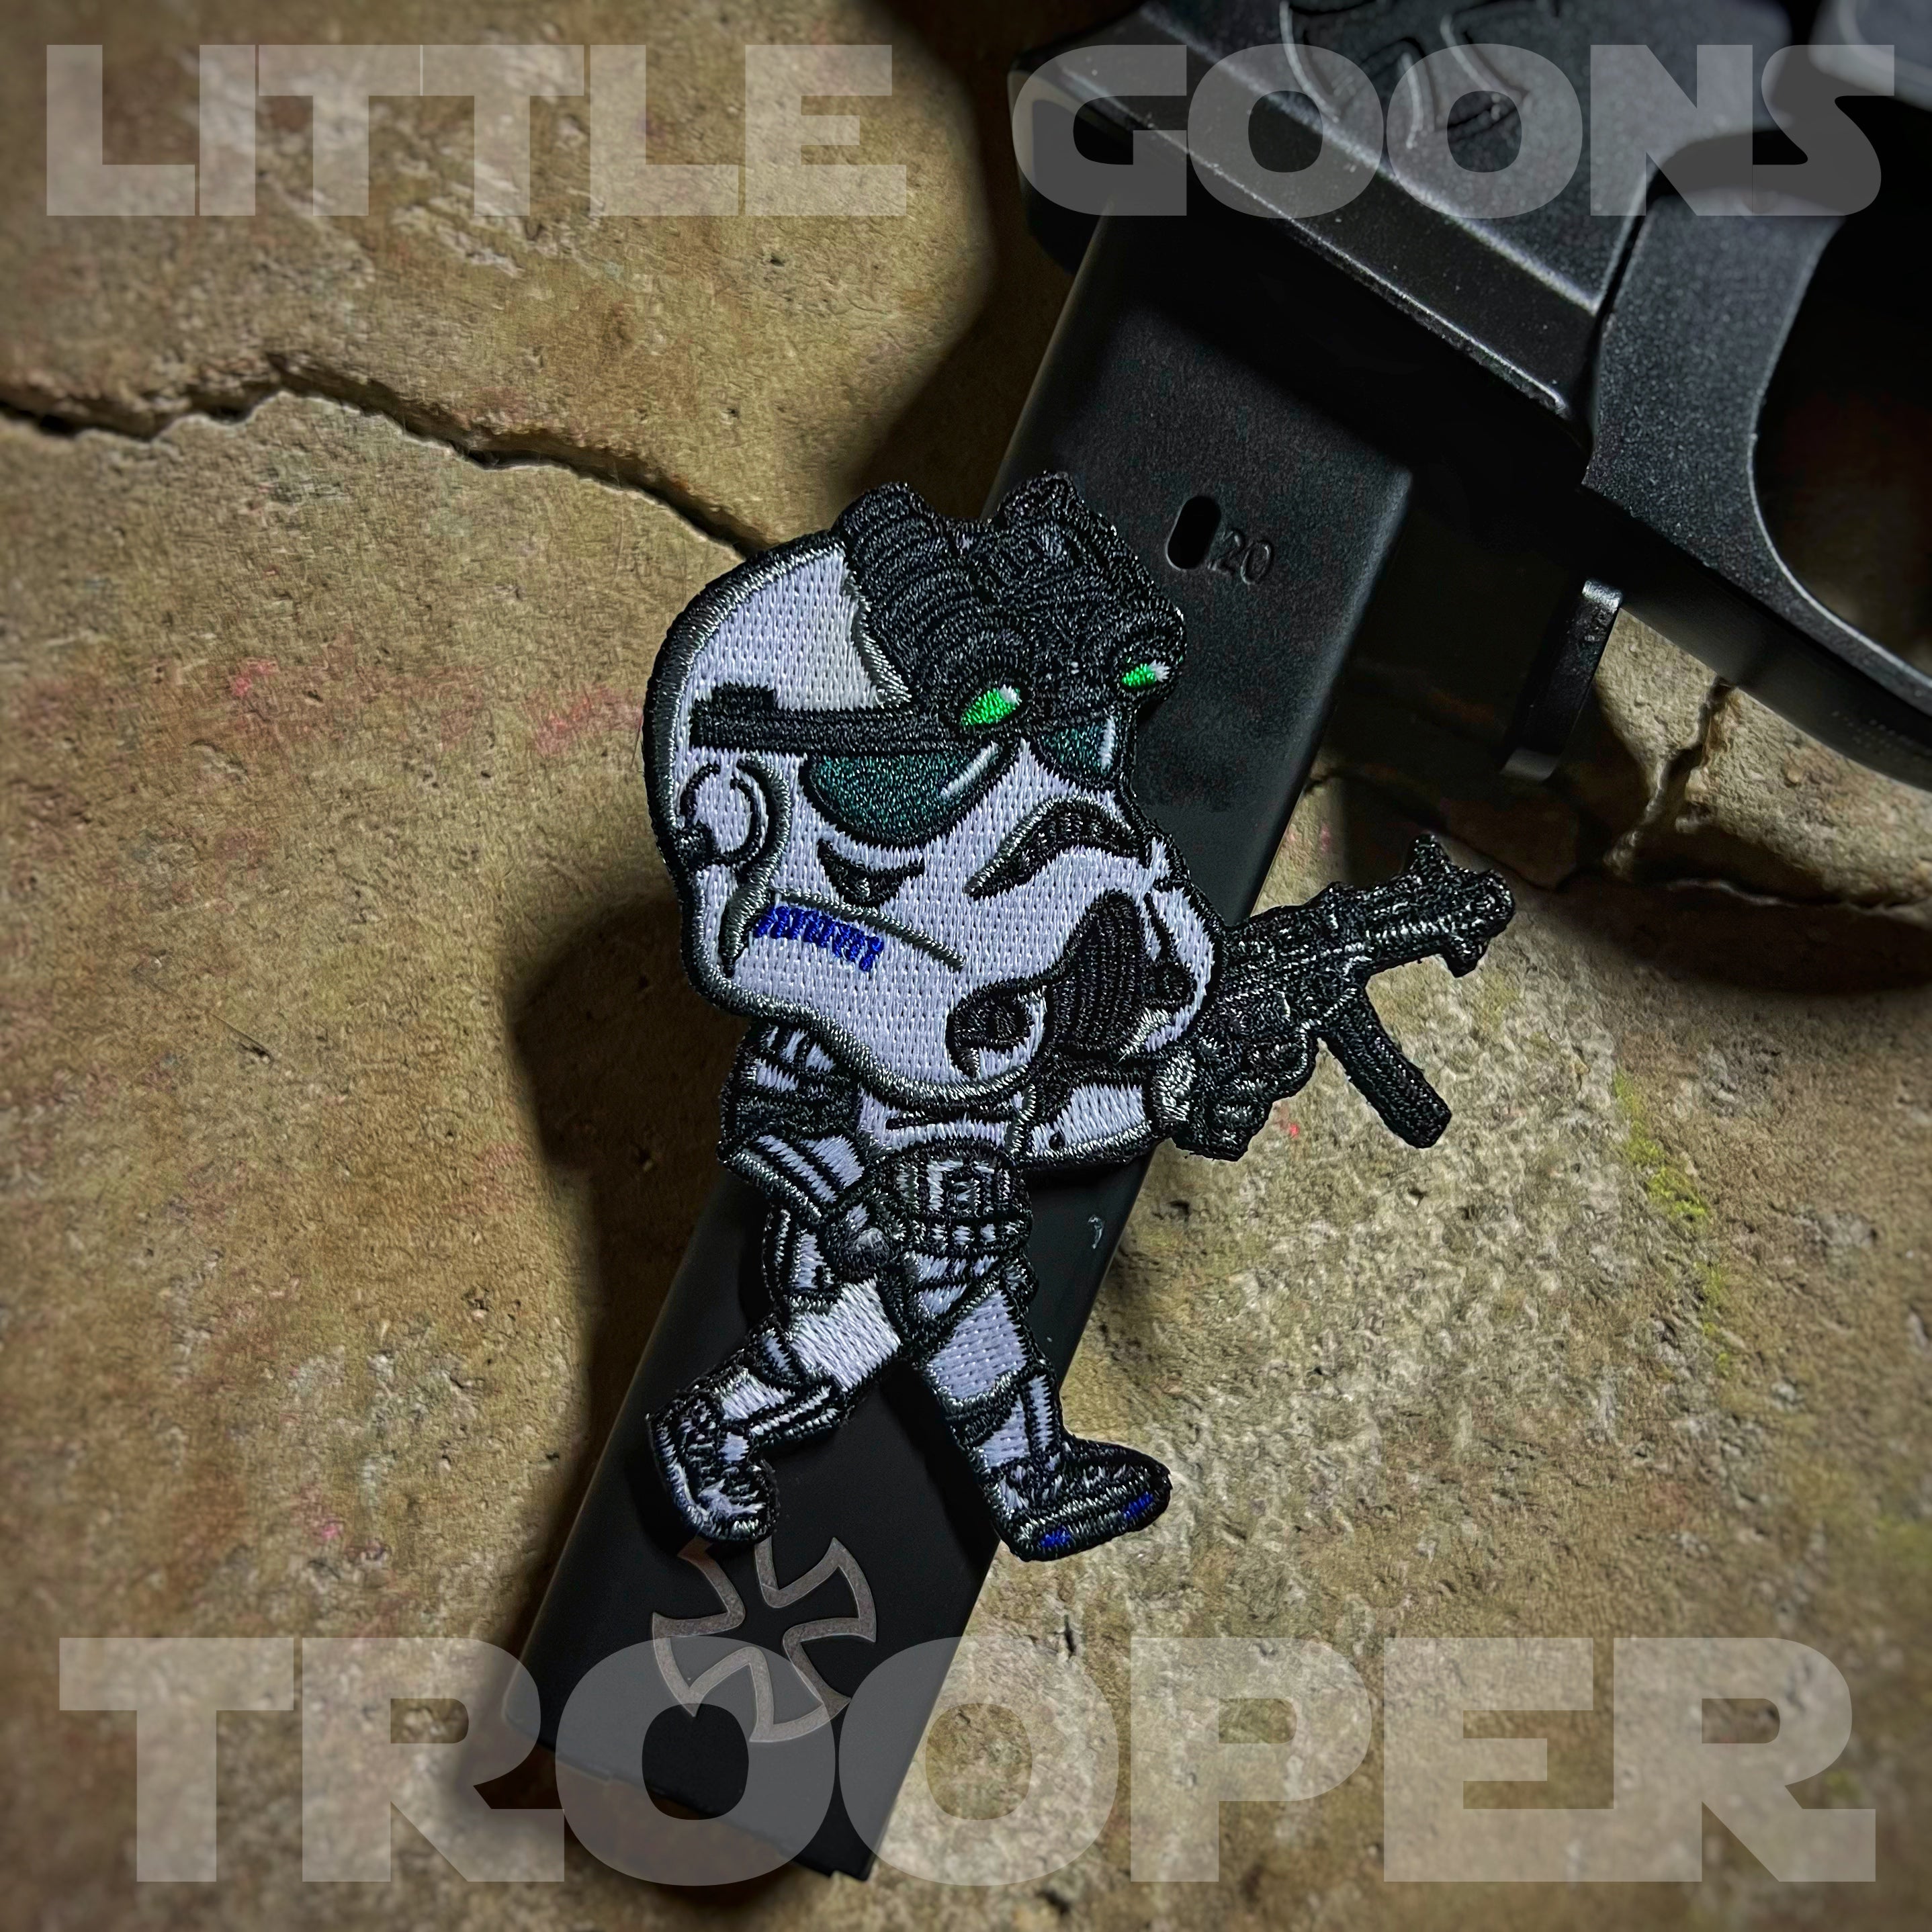 Dangerous Goods®️ Little Goons Action Figure Morale Patch - Trooper